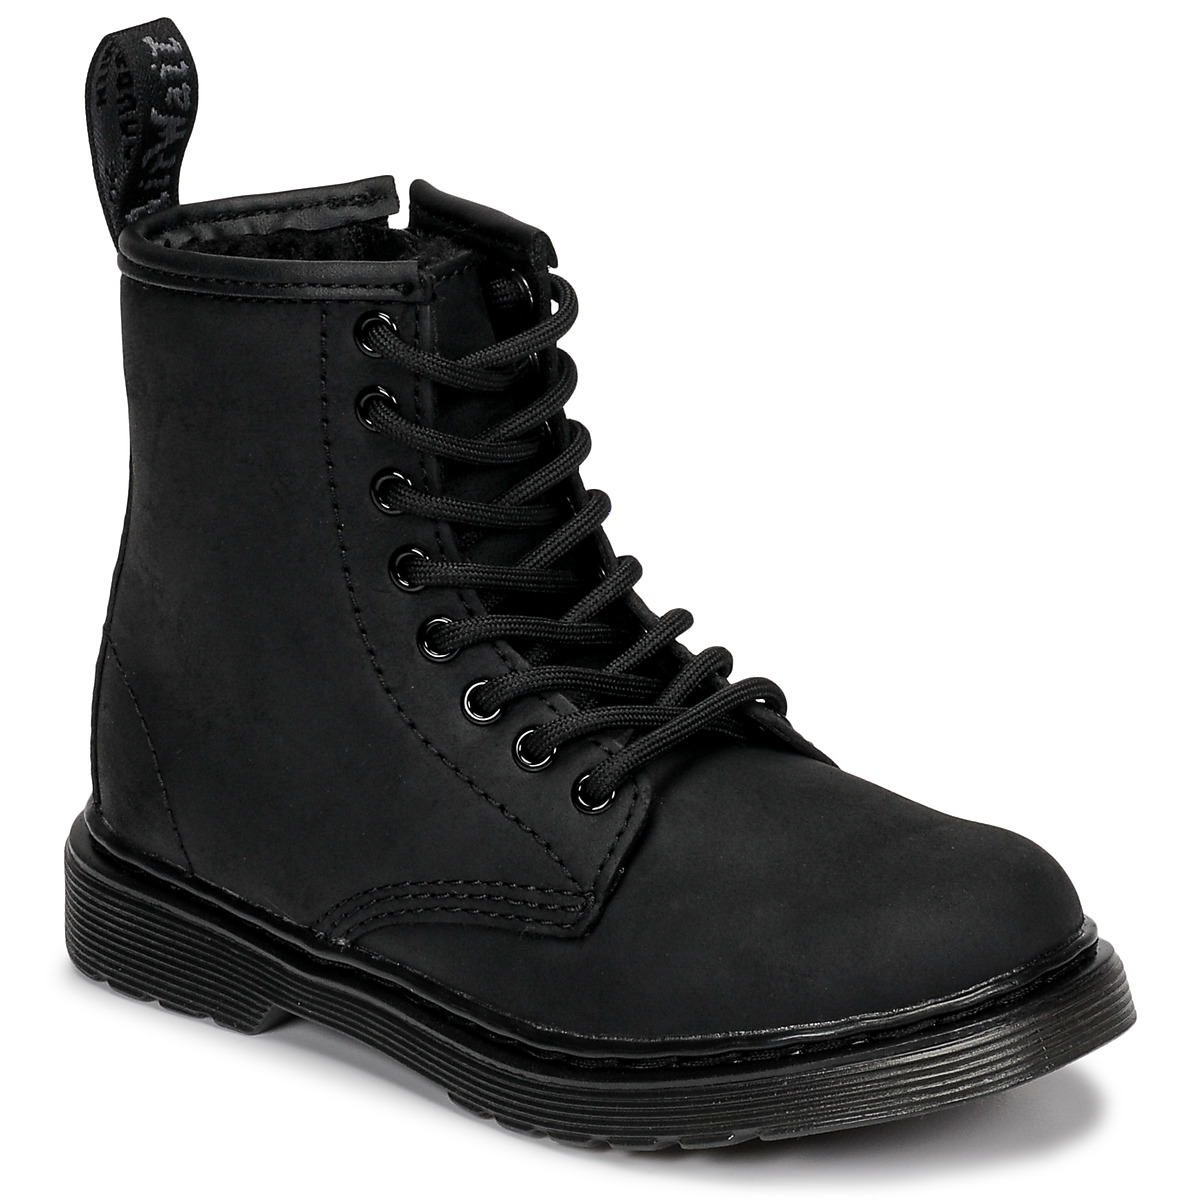 Chaussures Enfant martens Tie grey 1460 pascal boots 1460 SERENA MONO J Noir